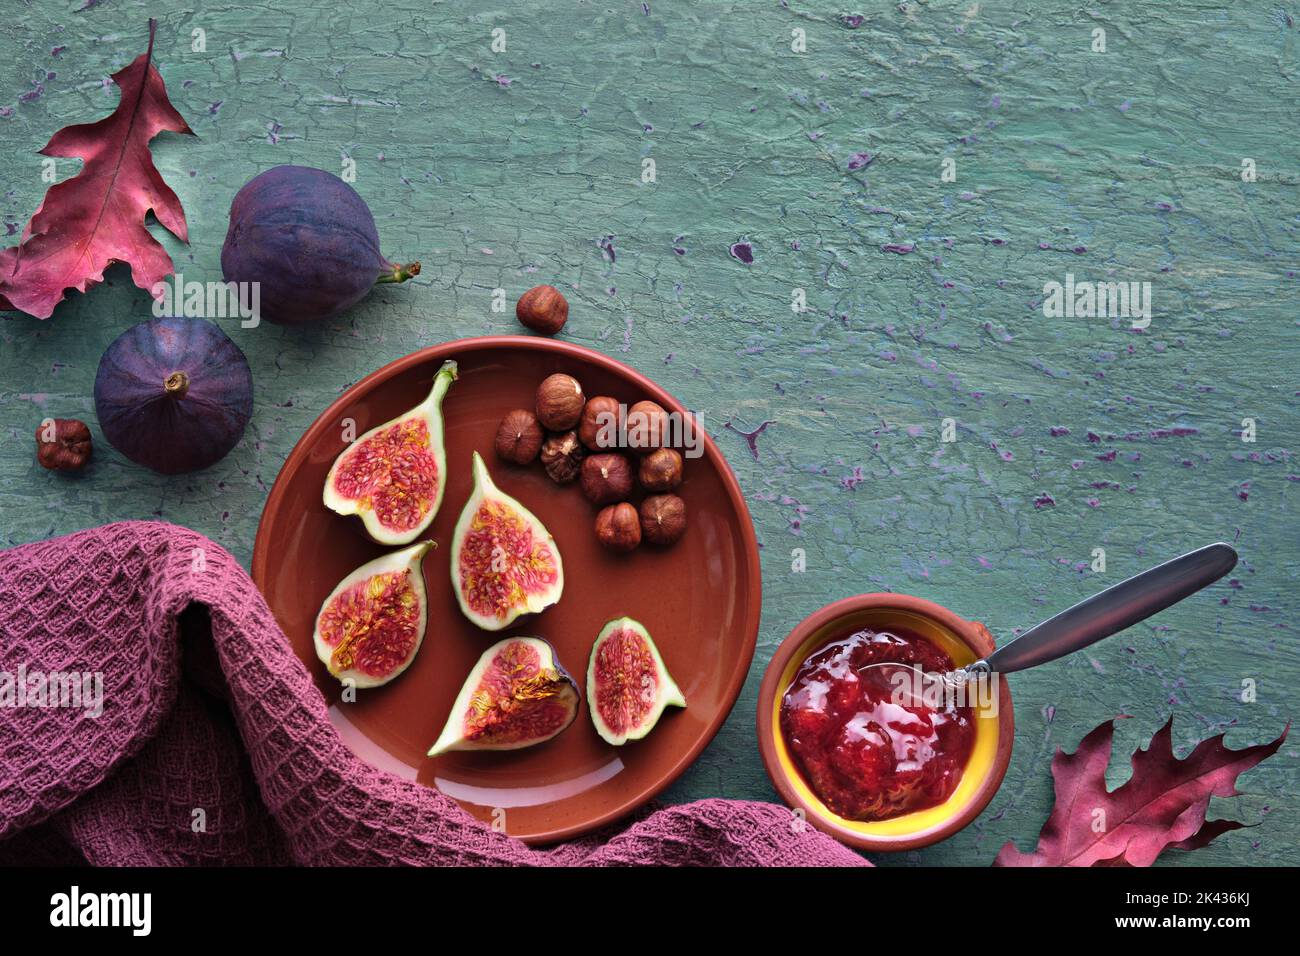 Herbstzeit Hintergrund mit frischen halbierten Feigenfrüchten auf Terrakotta-Keramikplatte. Magentafarbenes Handtuch und rote Herbstblätter auf türkisfarbener, mintgrüner Struktur Stockfoto